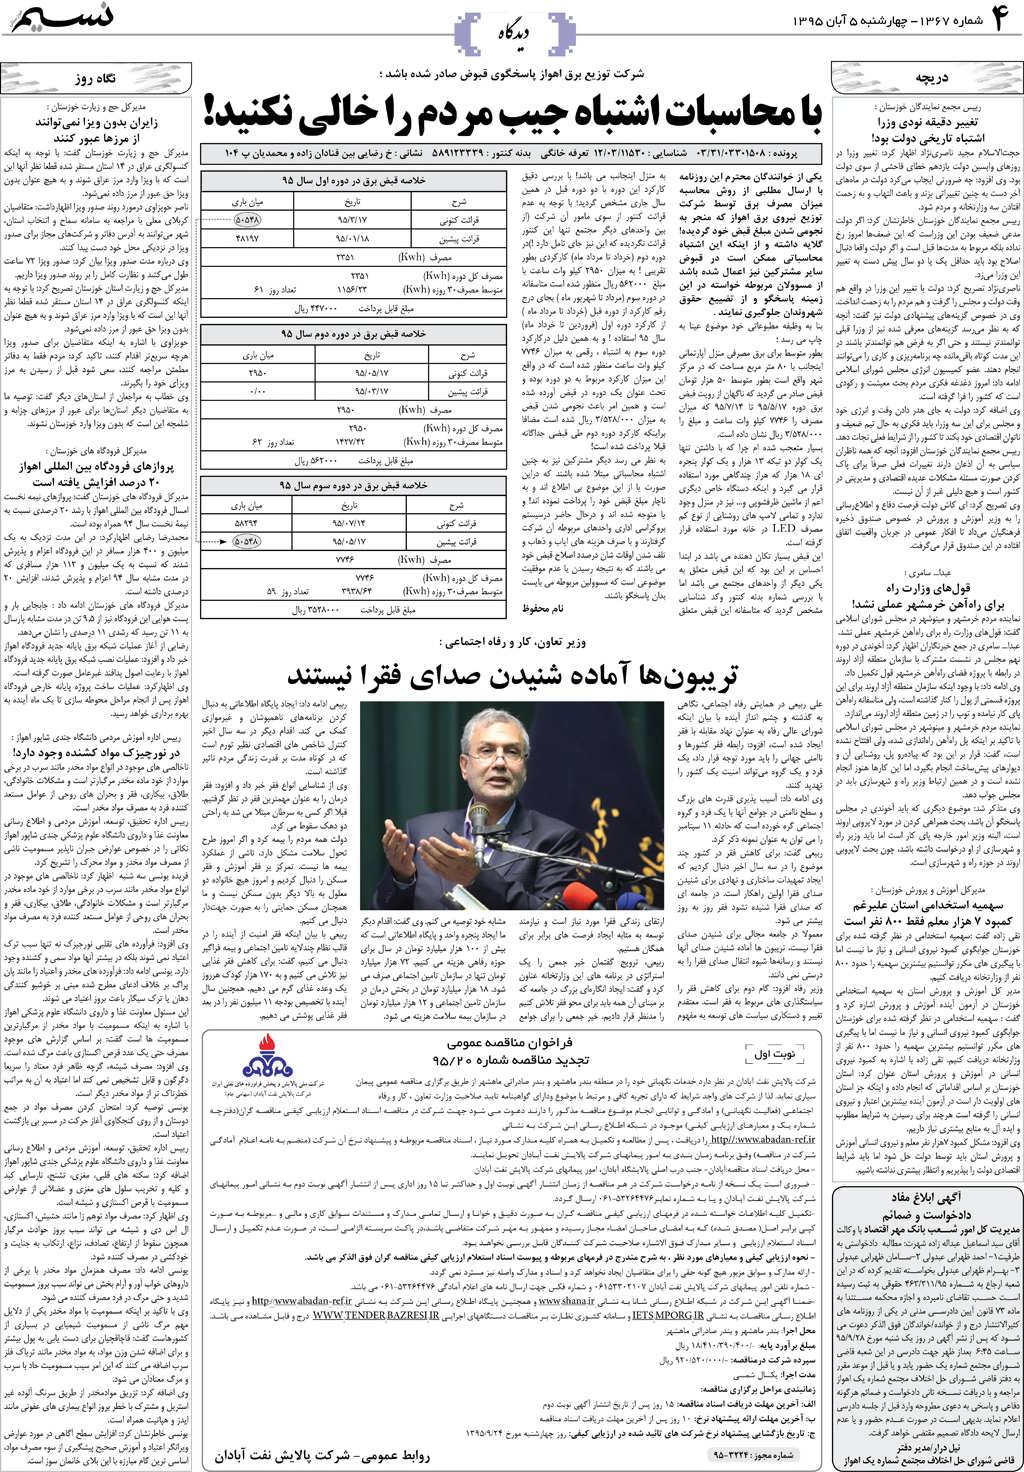 صفحه دیدگاه روزنامه نسیم شماره 1367